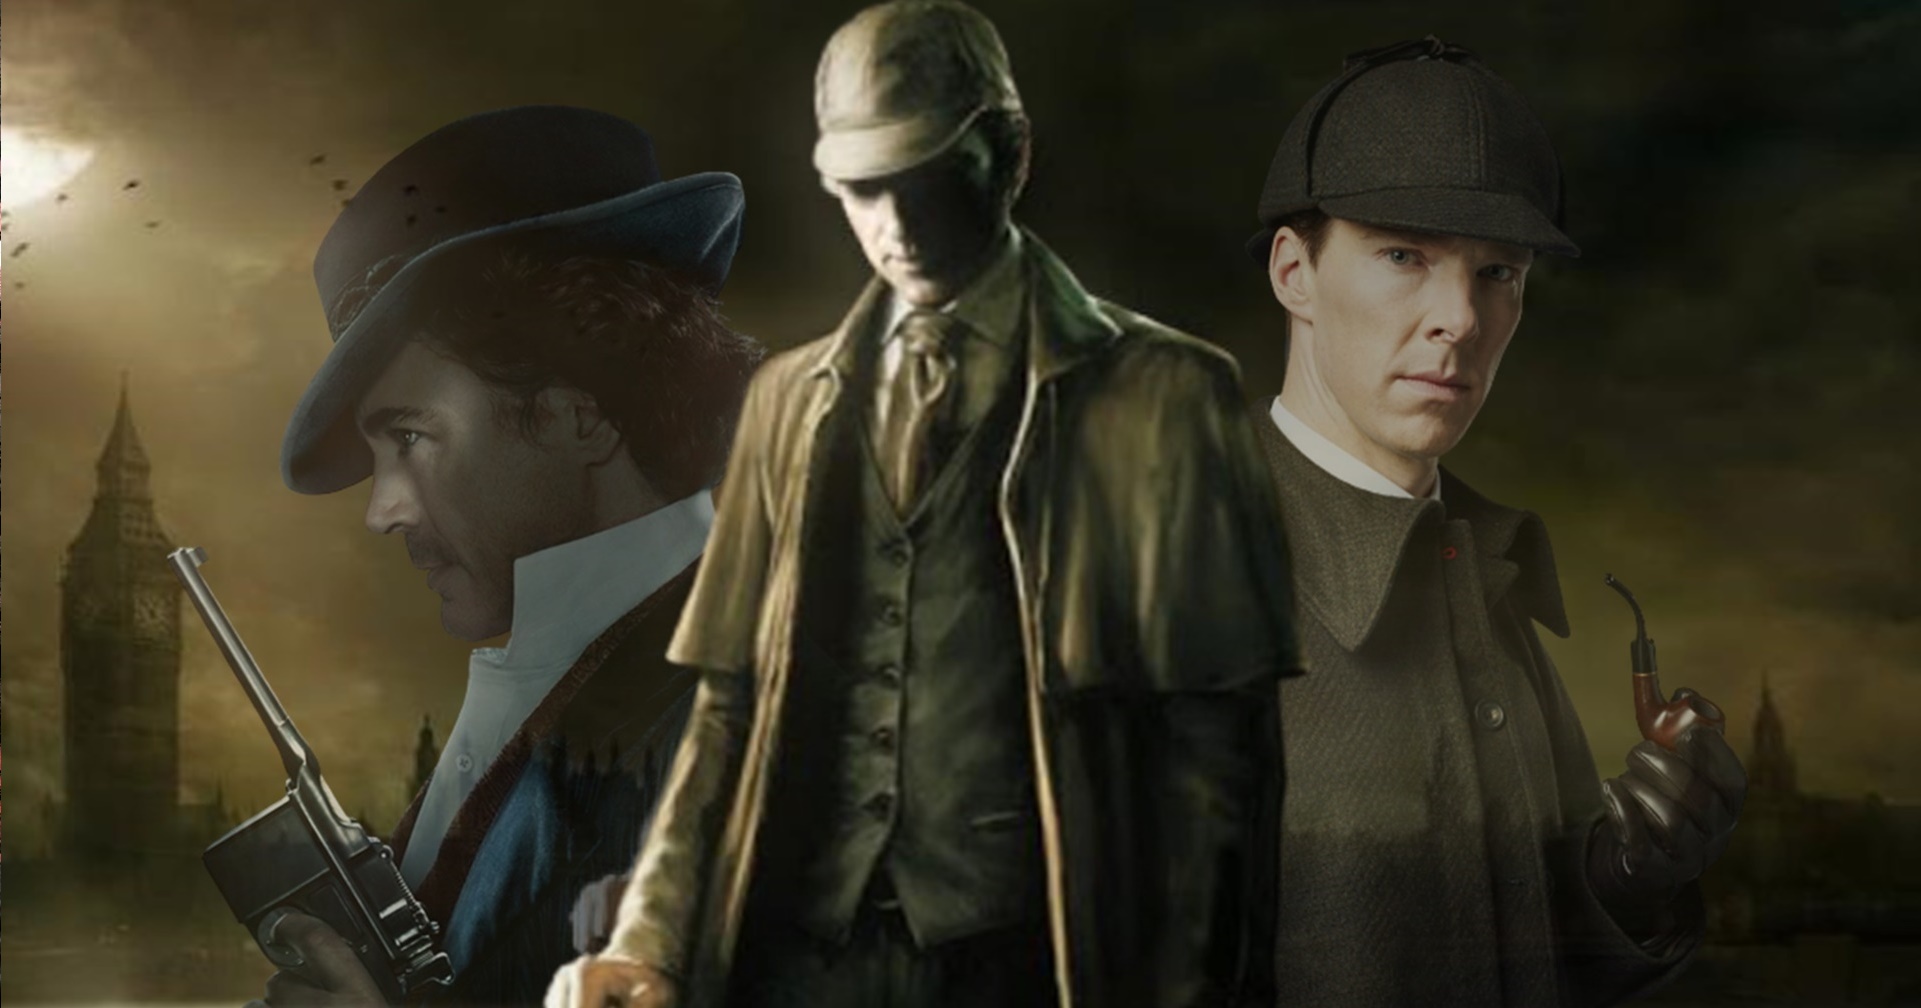 ทำความรู้จัก Sherlock Holmes นักสืบในตำนานผู้ไขคดีฆาตกรรมปริศนาที่น้อยคนนักจะรู้จัก